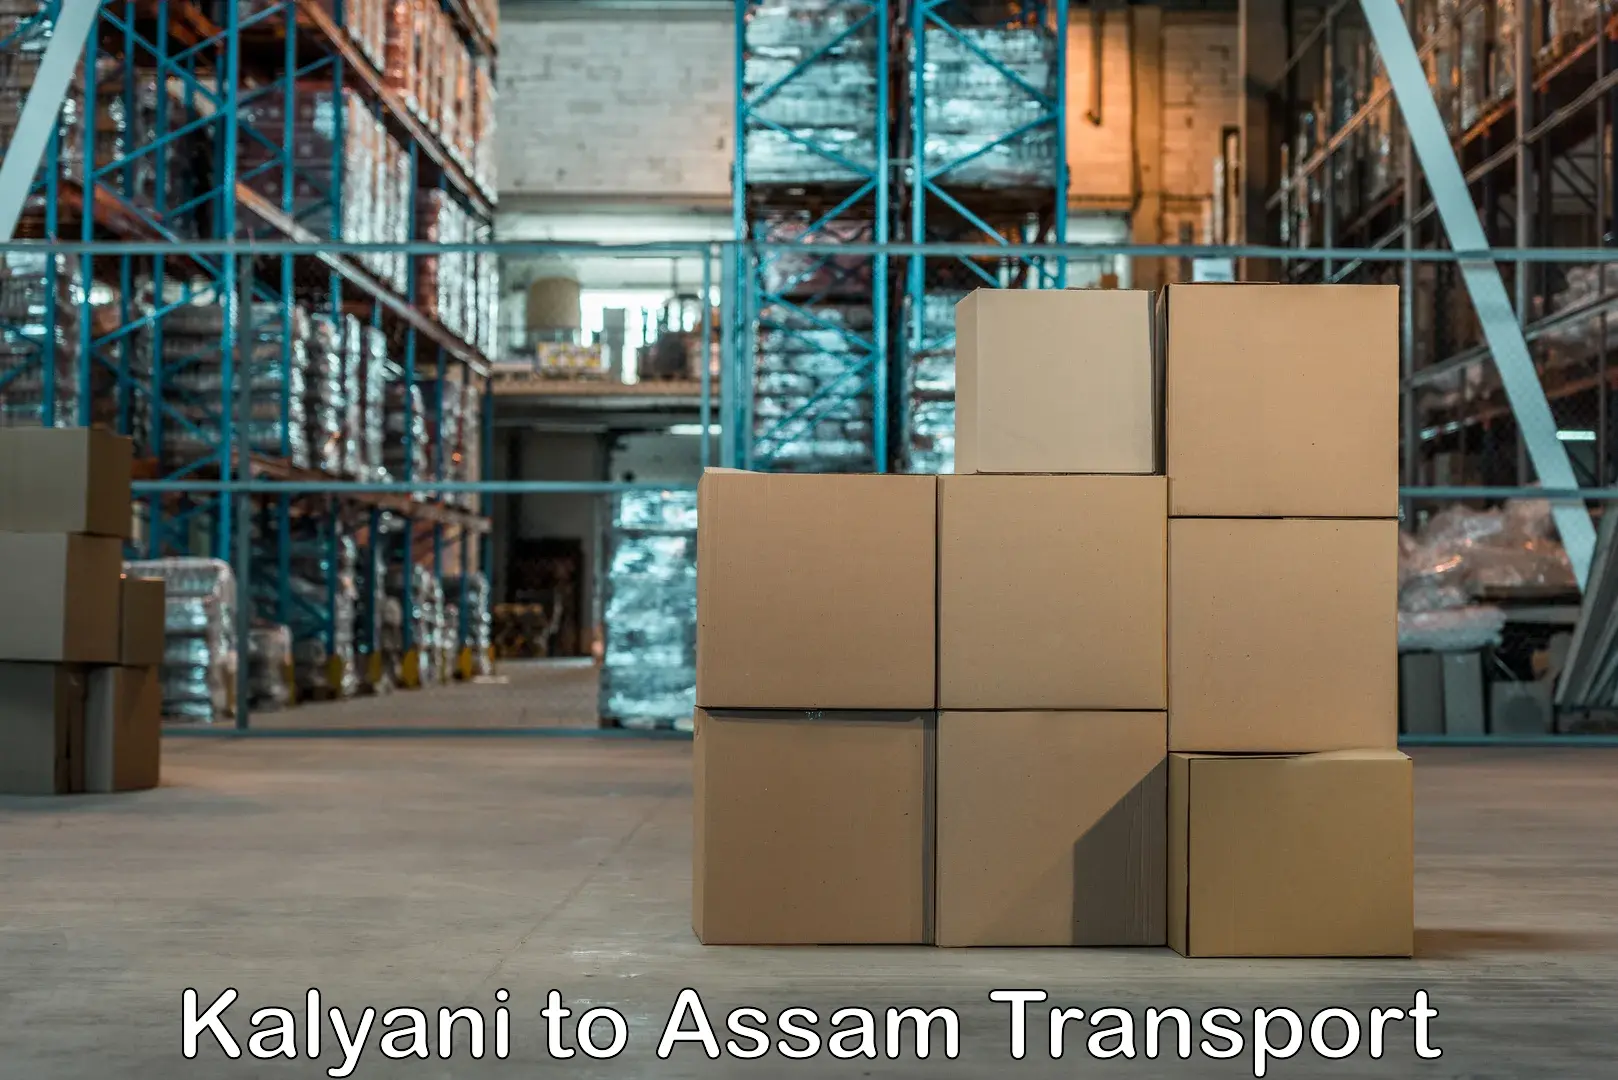 Nearest transport service Kalyani to Assam